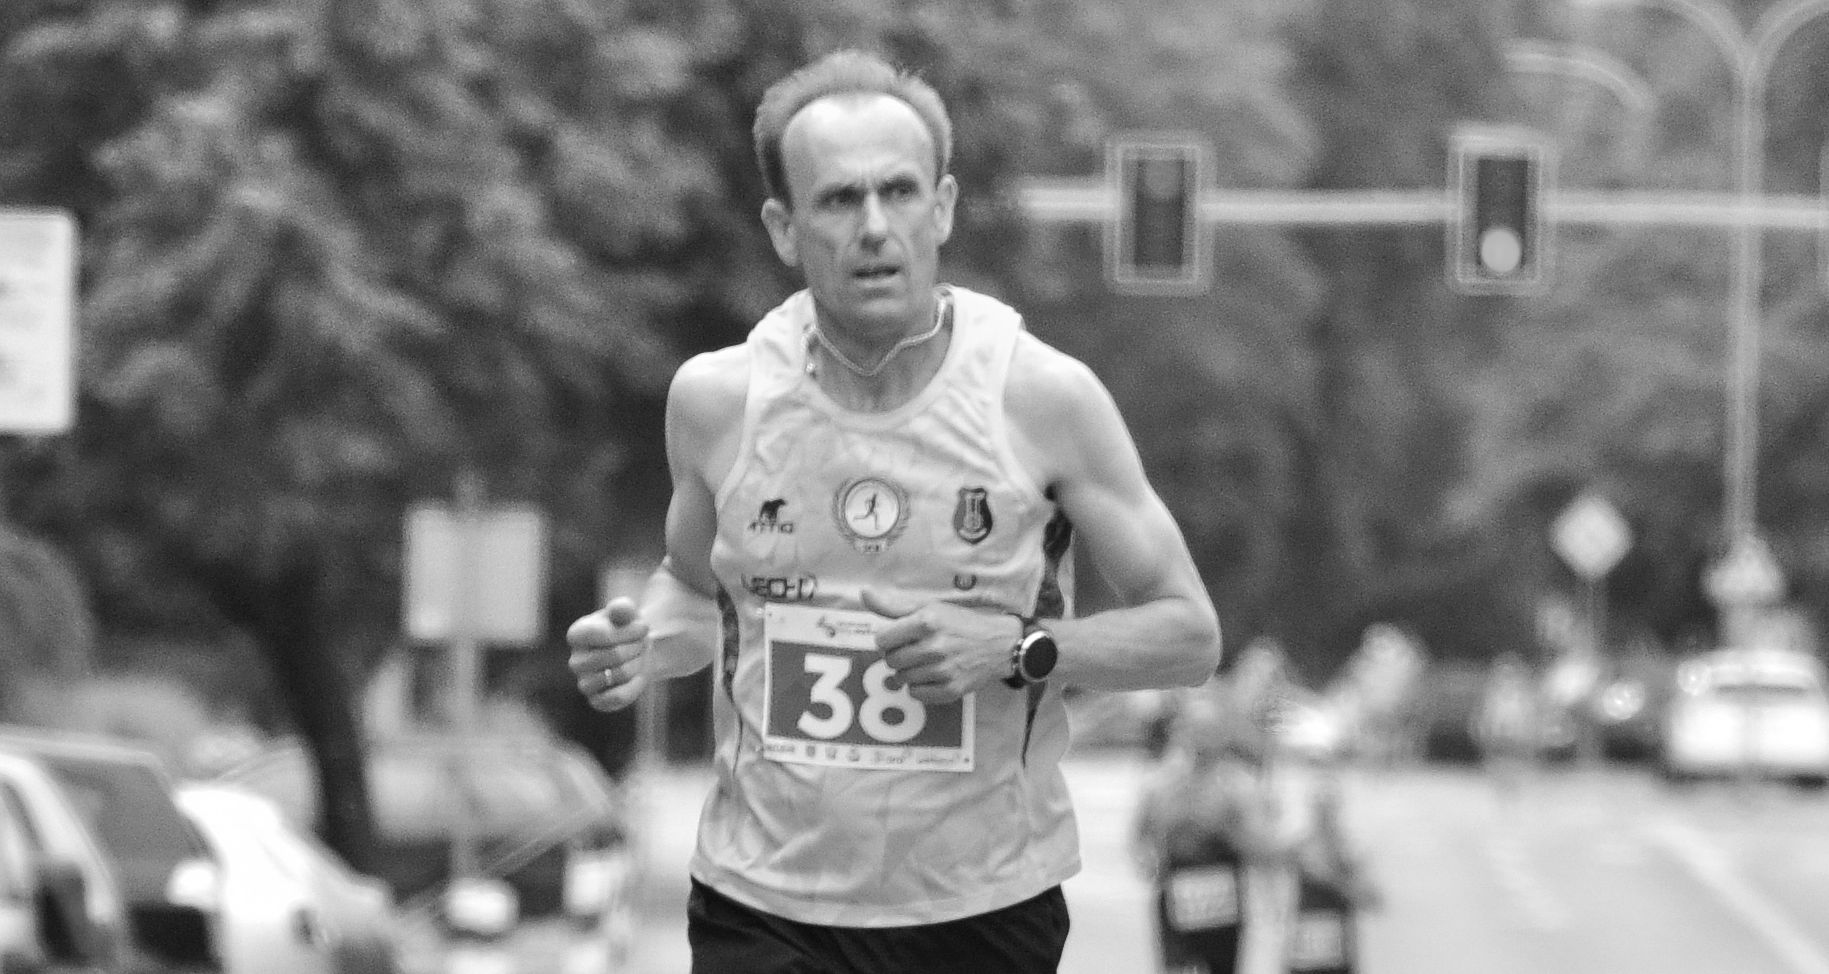 Nie żyje ceniony biegacz i społecznik Bogdan Dziuba! Wiemy kiedy będzie pogrzeb [ZDJĘCIA, AKTUALIZACJA] - Zdjęcie główne